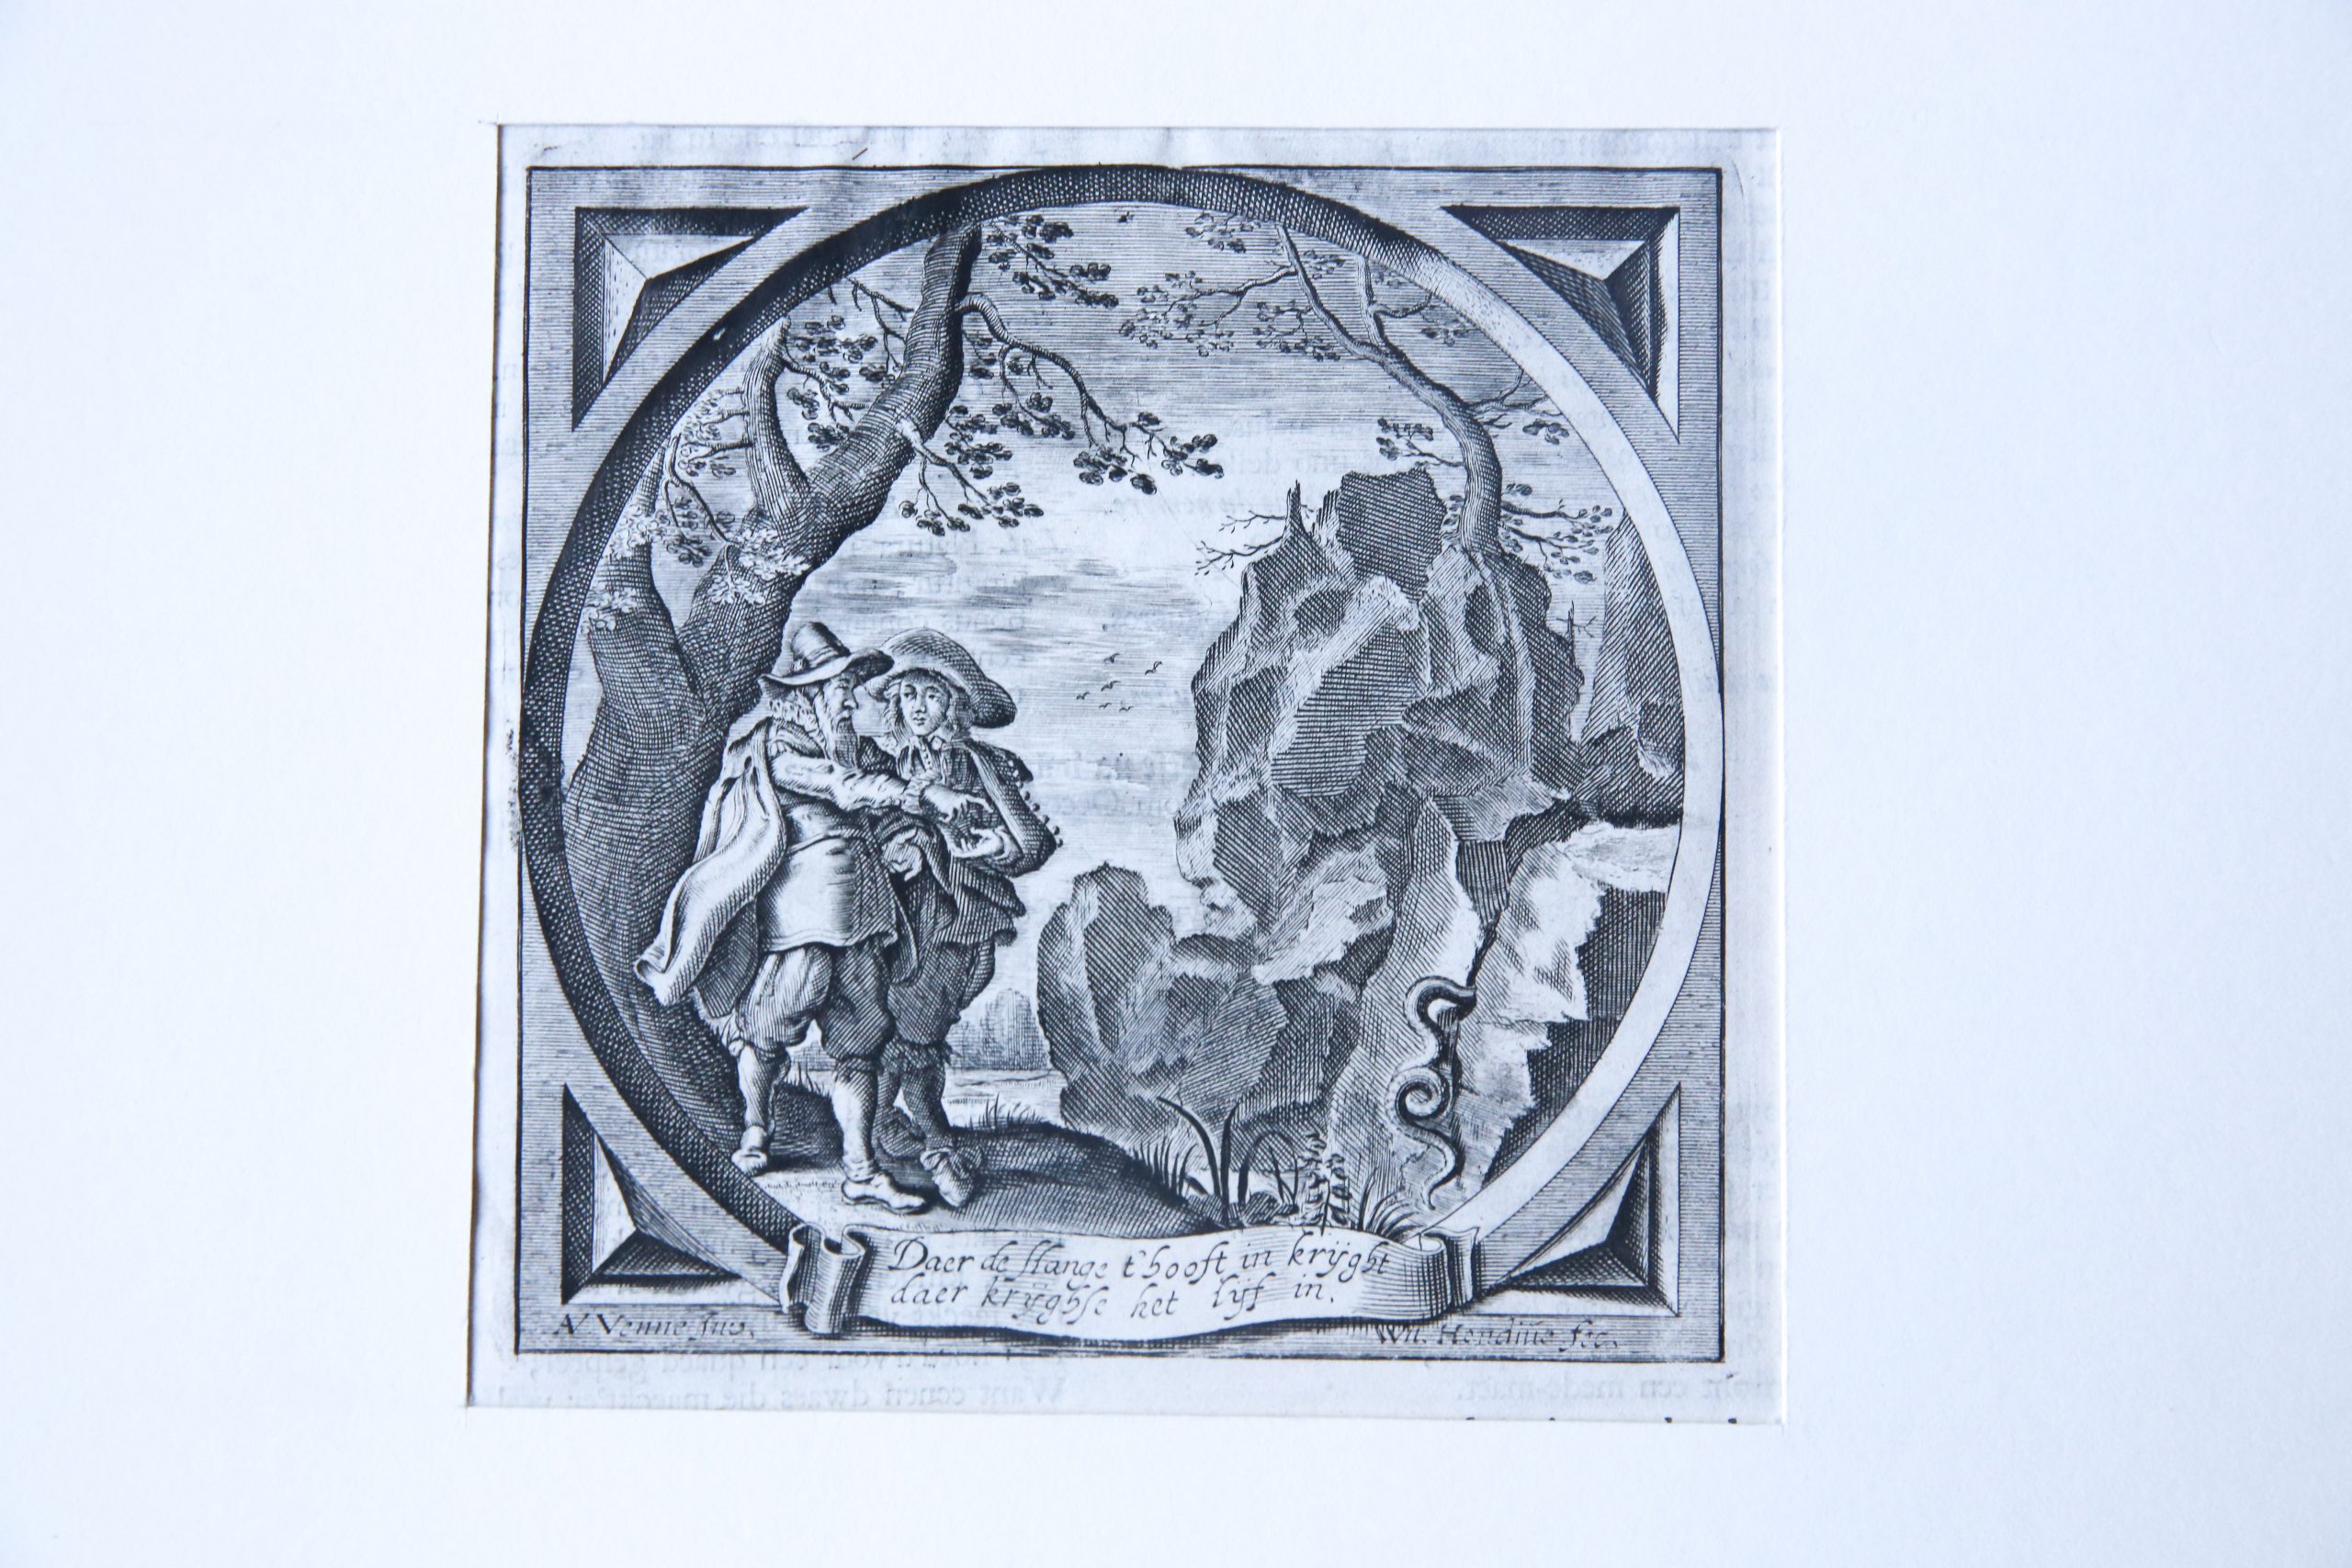 Engraving/Gravure: Daer de slange het hooft in krijght, daer krijgtse licht het lijf in (Alle de Wercken van den heere Jacob Cats..., 1655).